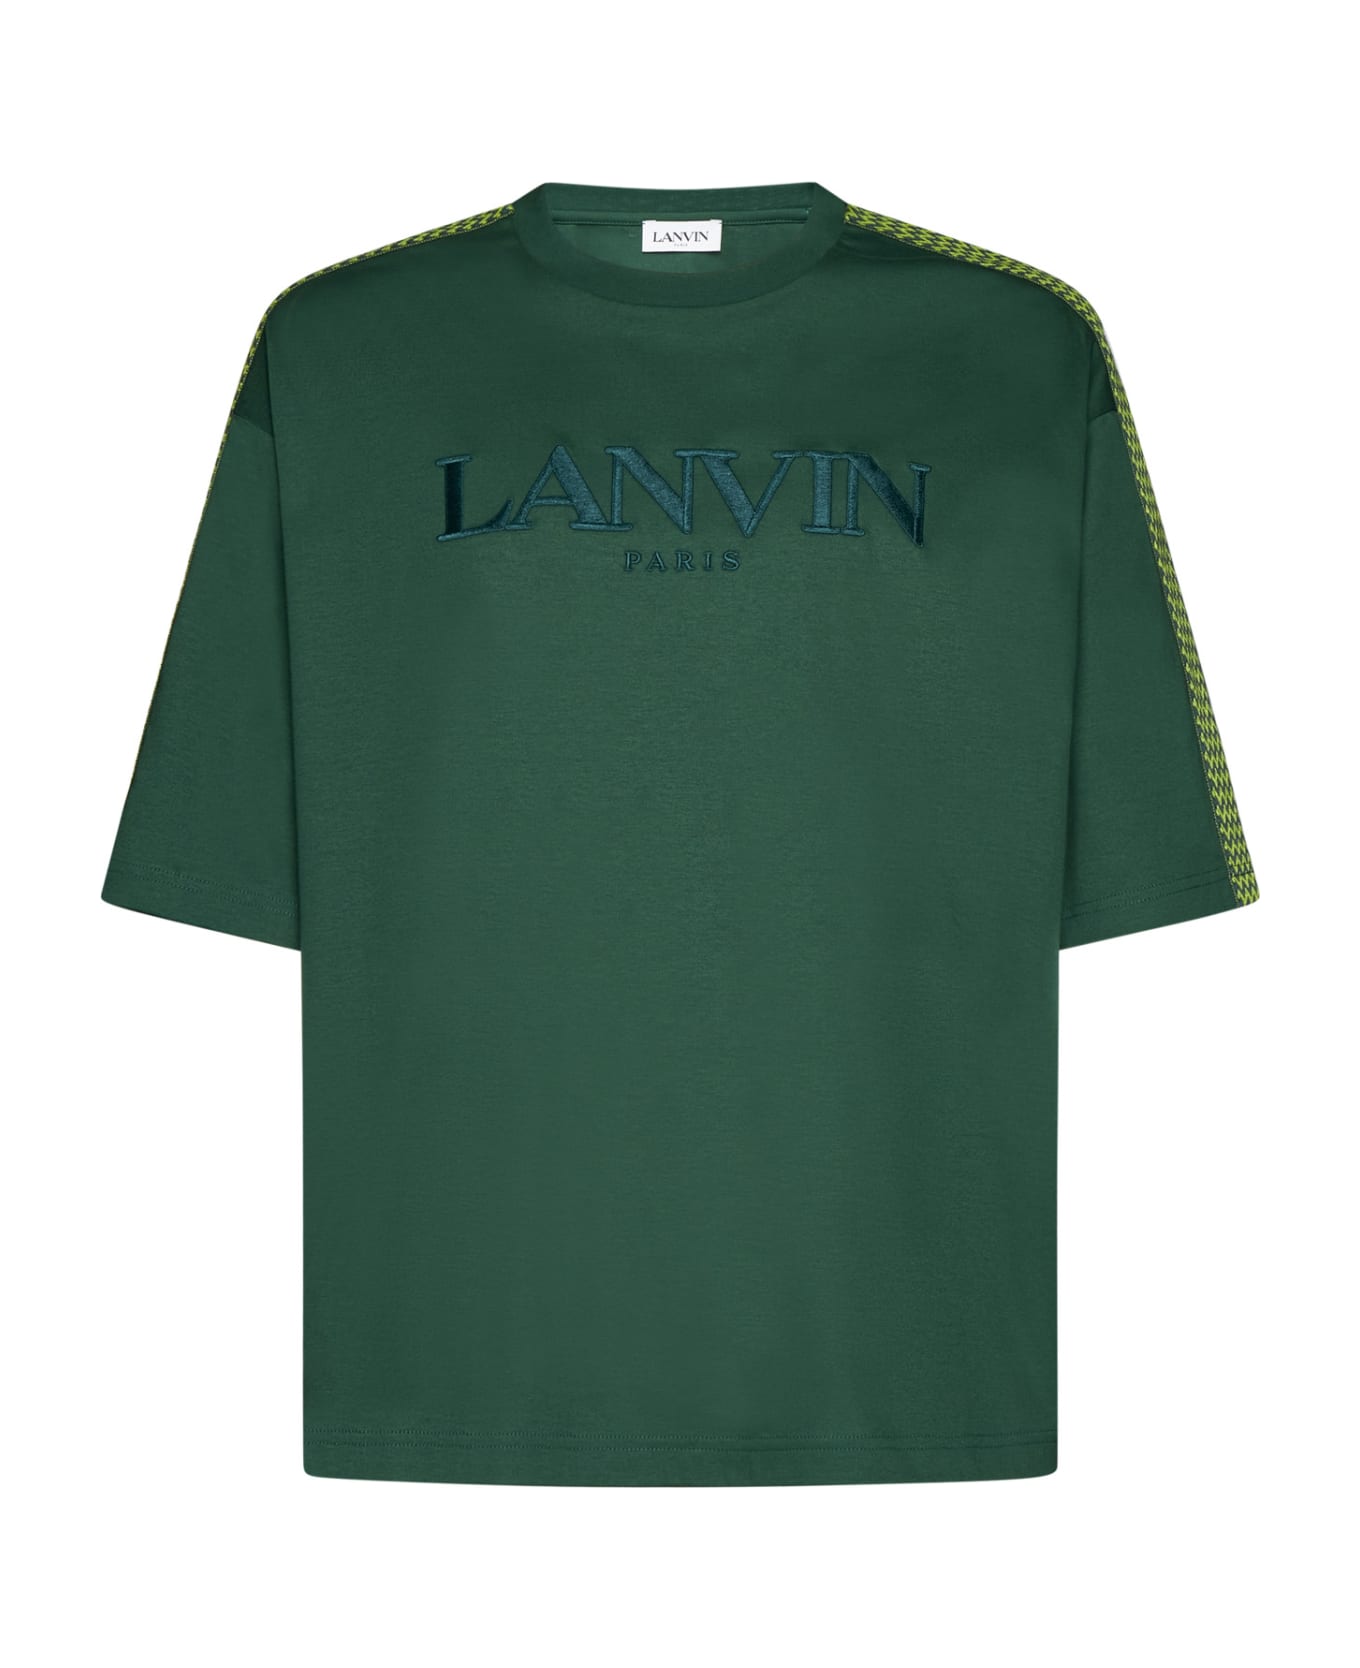 Lanvin T-Shirt - Bottle